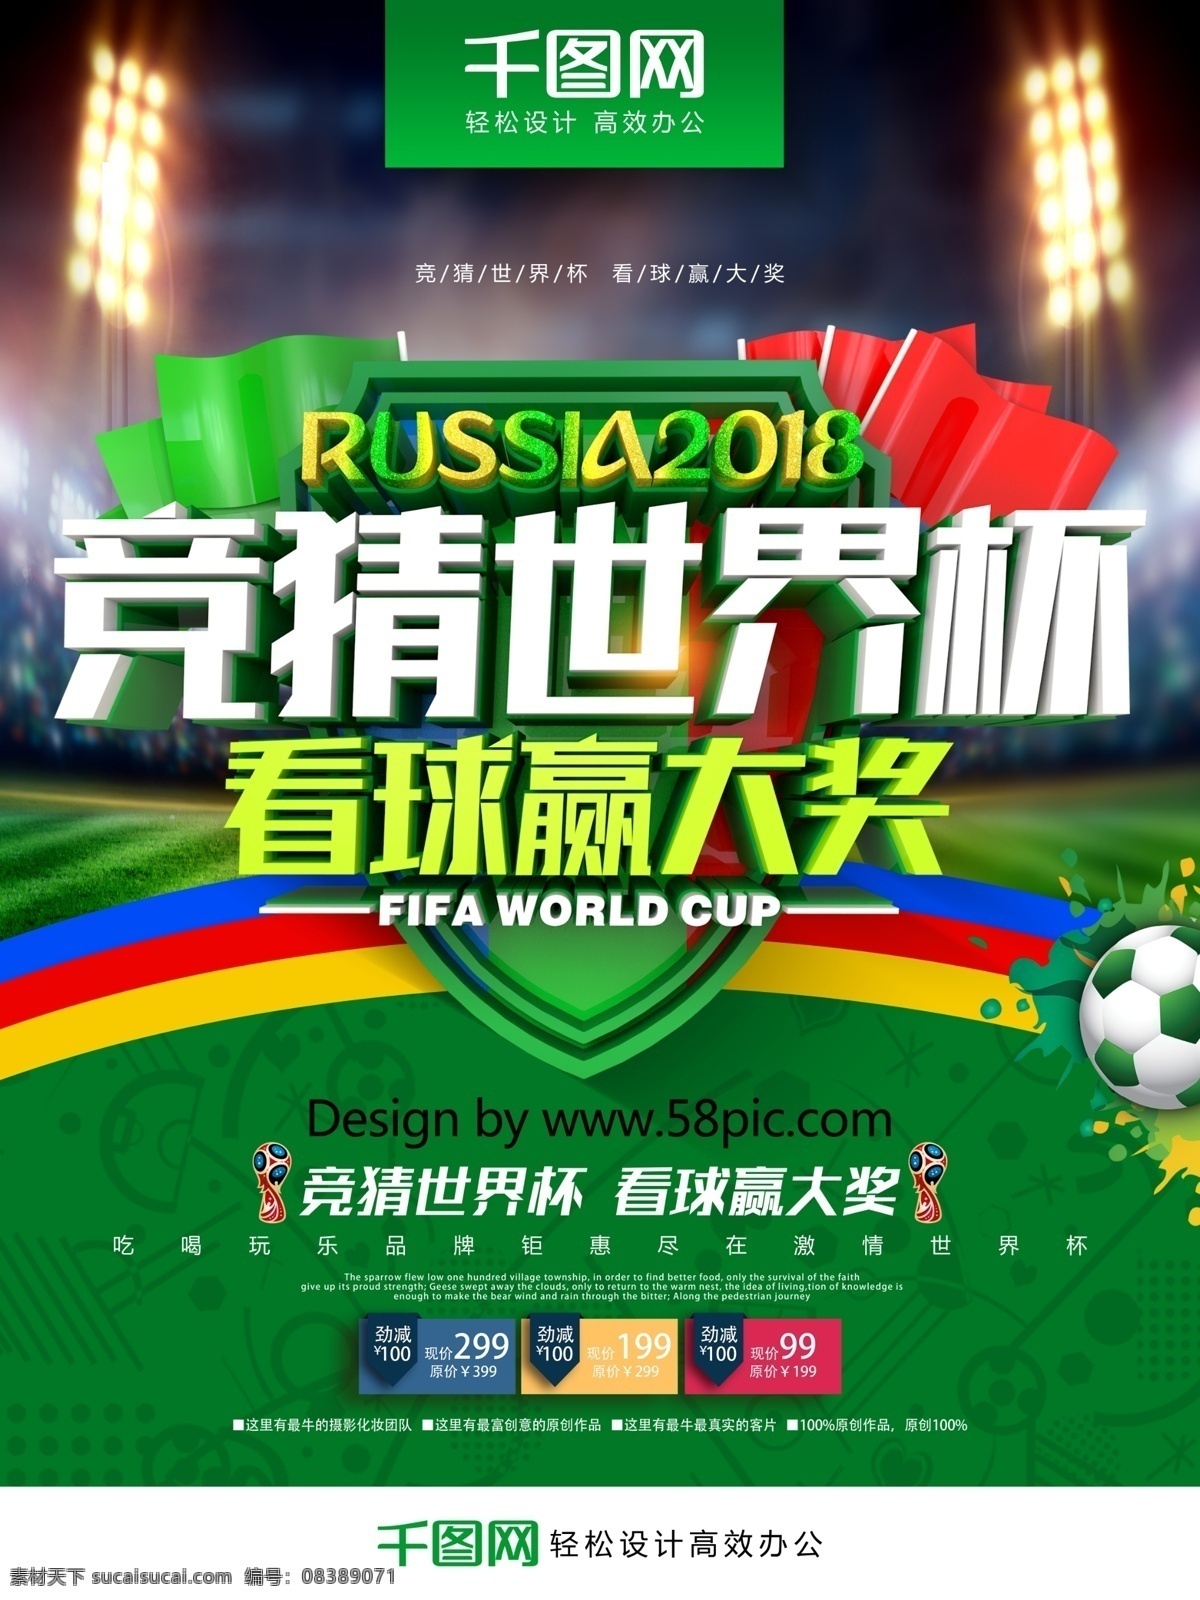 创意 绿色 清新 时尚 立体 竞猜 世界杯 海报 激情世界杯 世界杯赛程 世界杯海报 世界杯竞猜 2018 足球赛程 俄国世界杯 俄罗斯世界杯 相约世界杯 决战世界杯 俄罗斯足球 世界杯比赛 竞猜世界杯